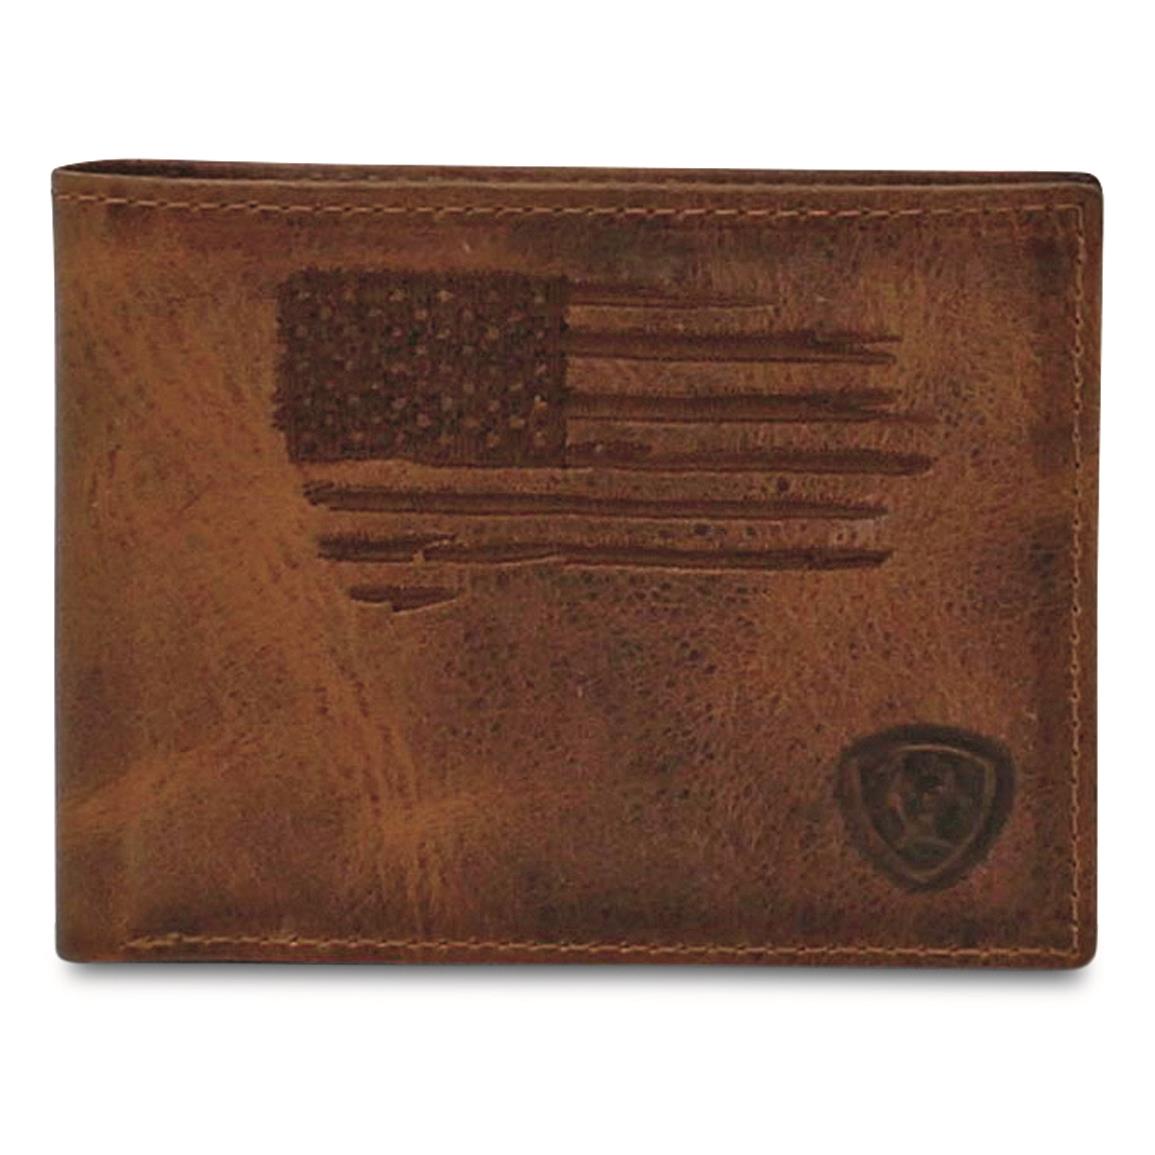 Ariat Scratch Flag Bifold Wallet, Brown